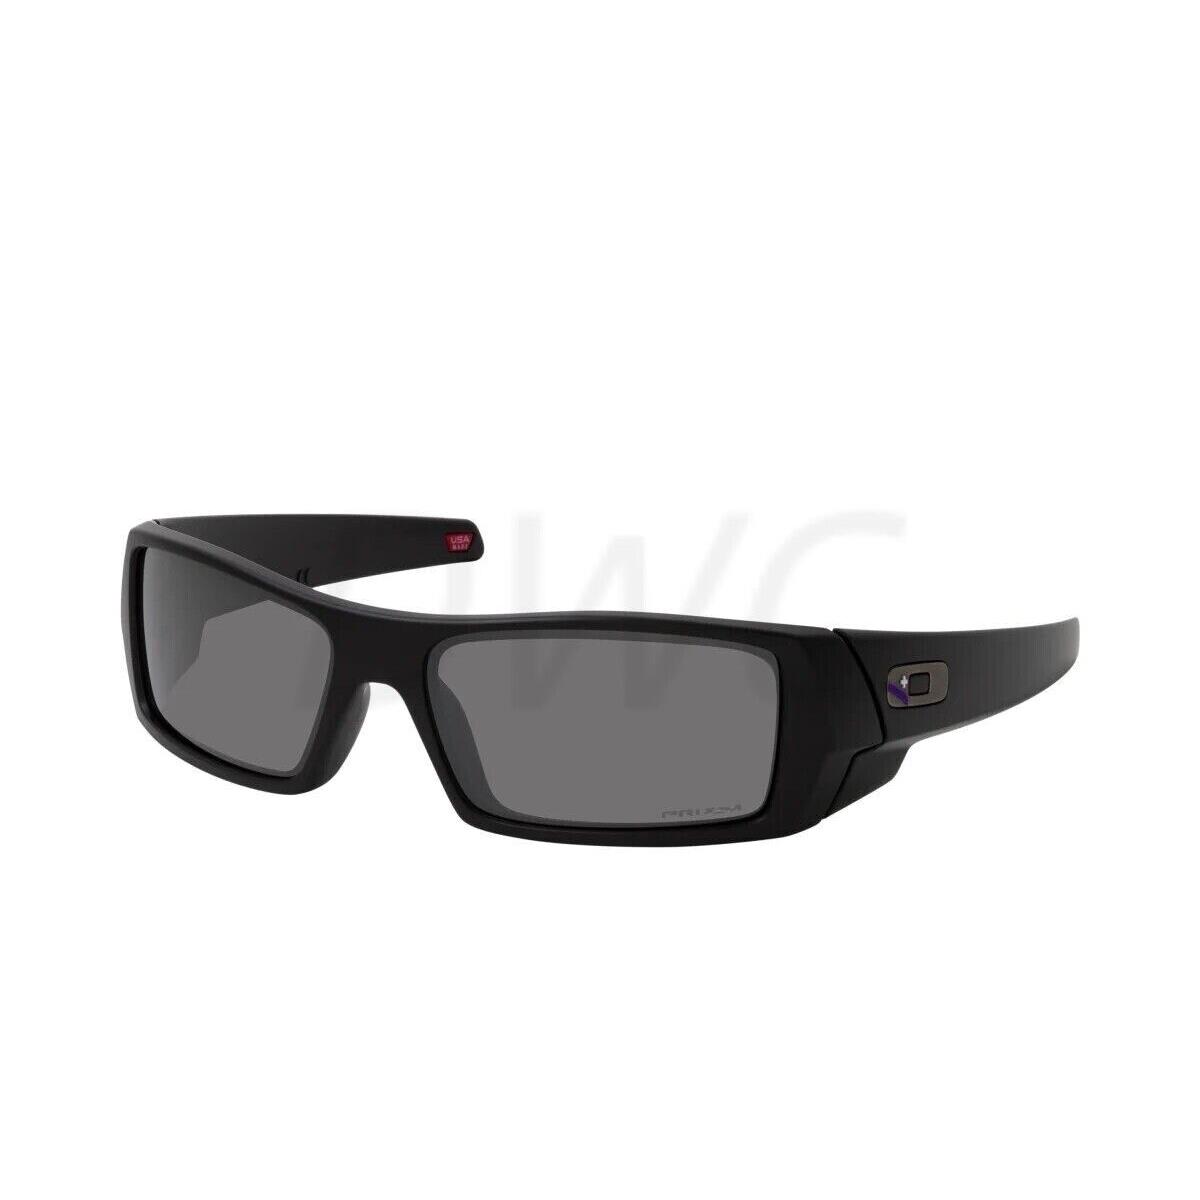 Oakley Gascan OO9014 901486 Matte Black / Prizm Black Sunglasses - Frame: Black, Lens: Black